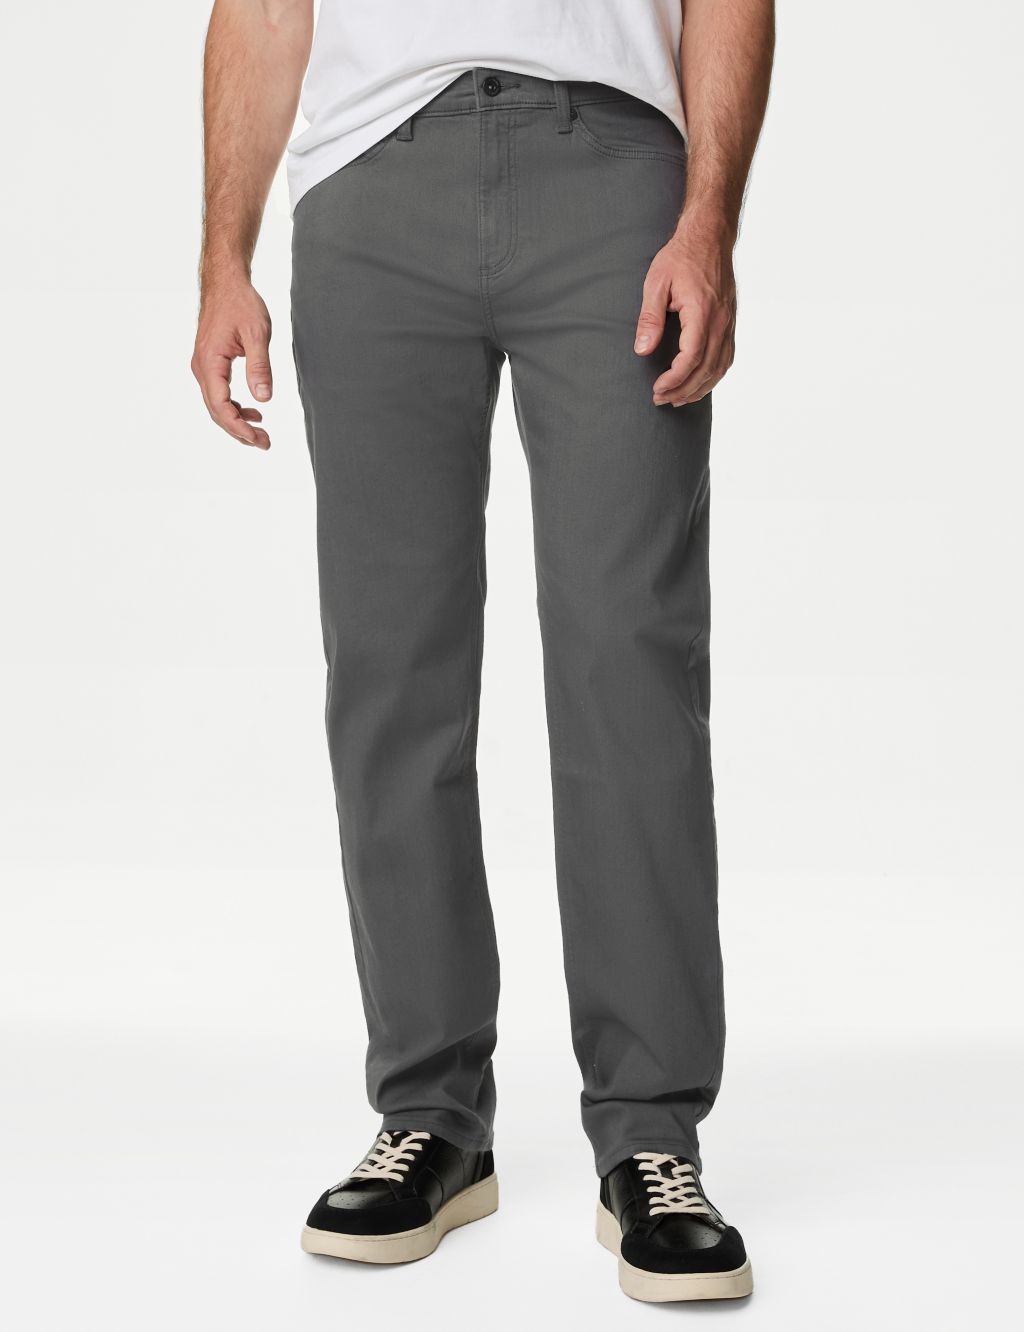 T&S Men's Formal Pants Grey textured, Slim Fit at Rs 800 in Etah